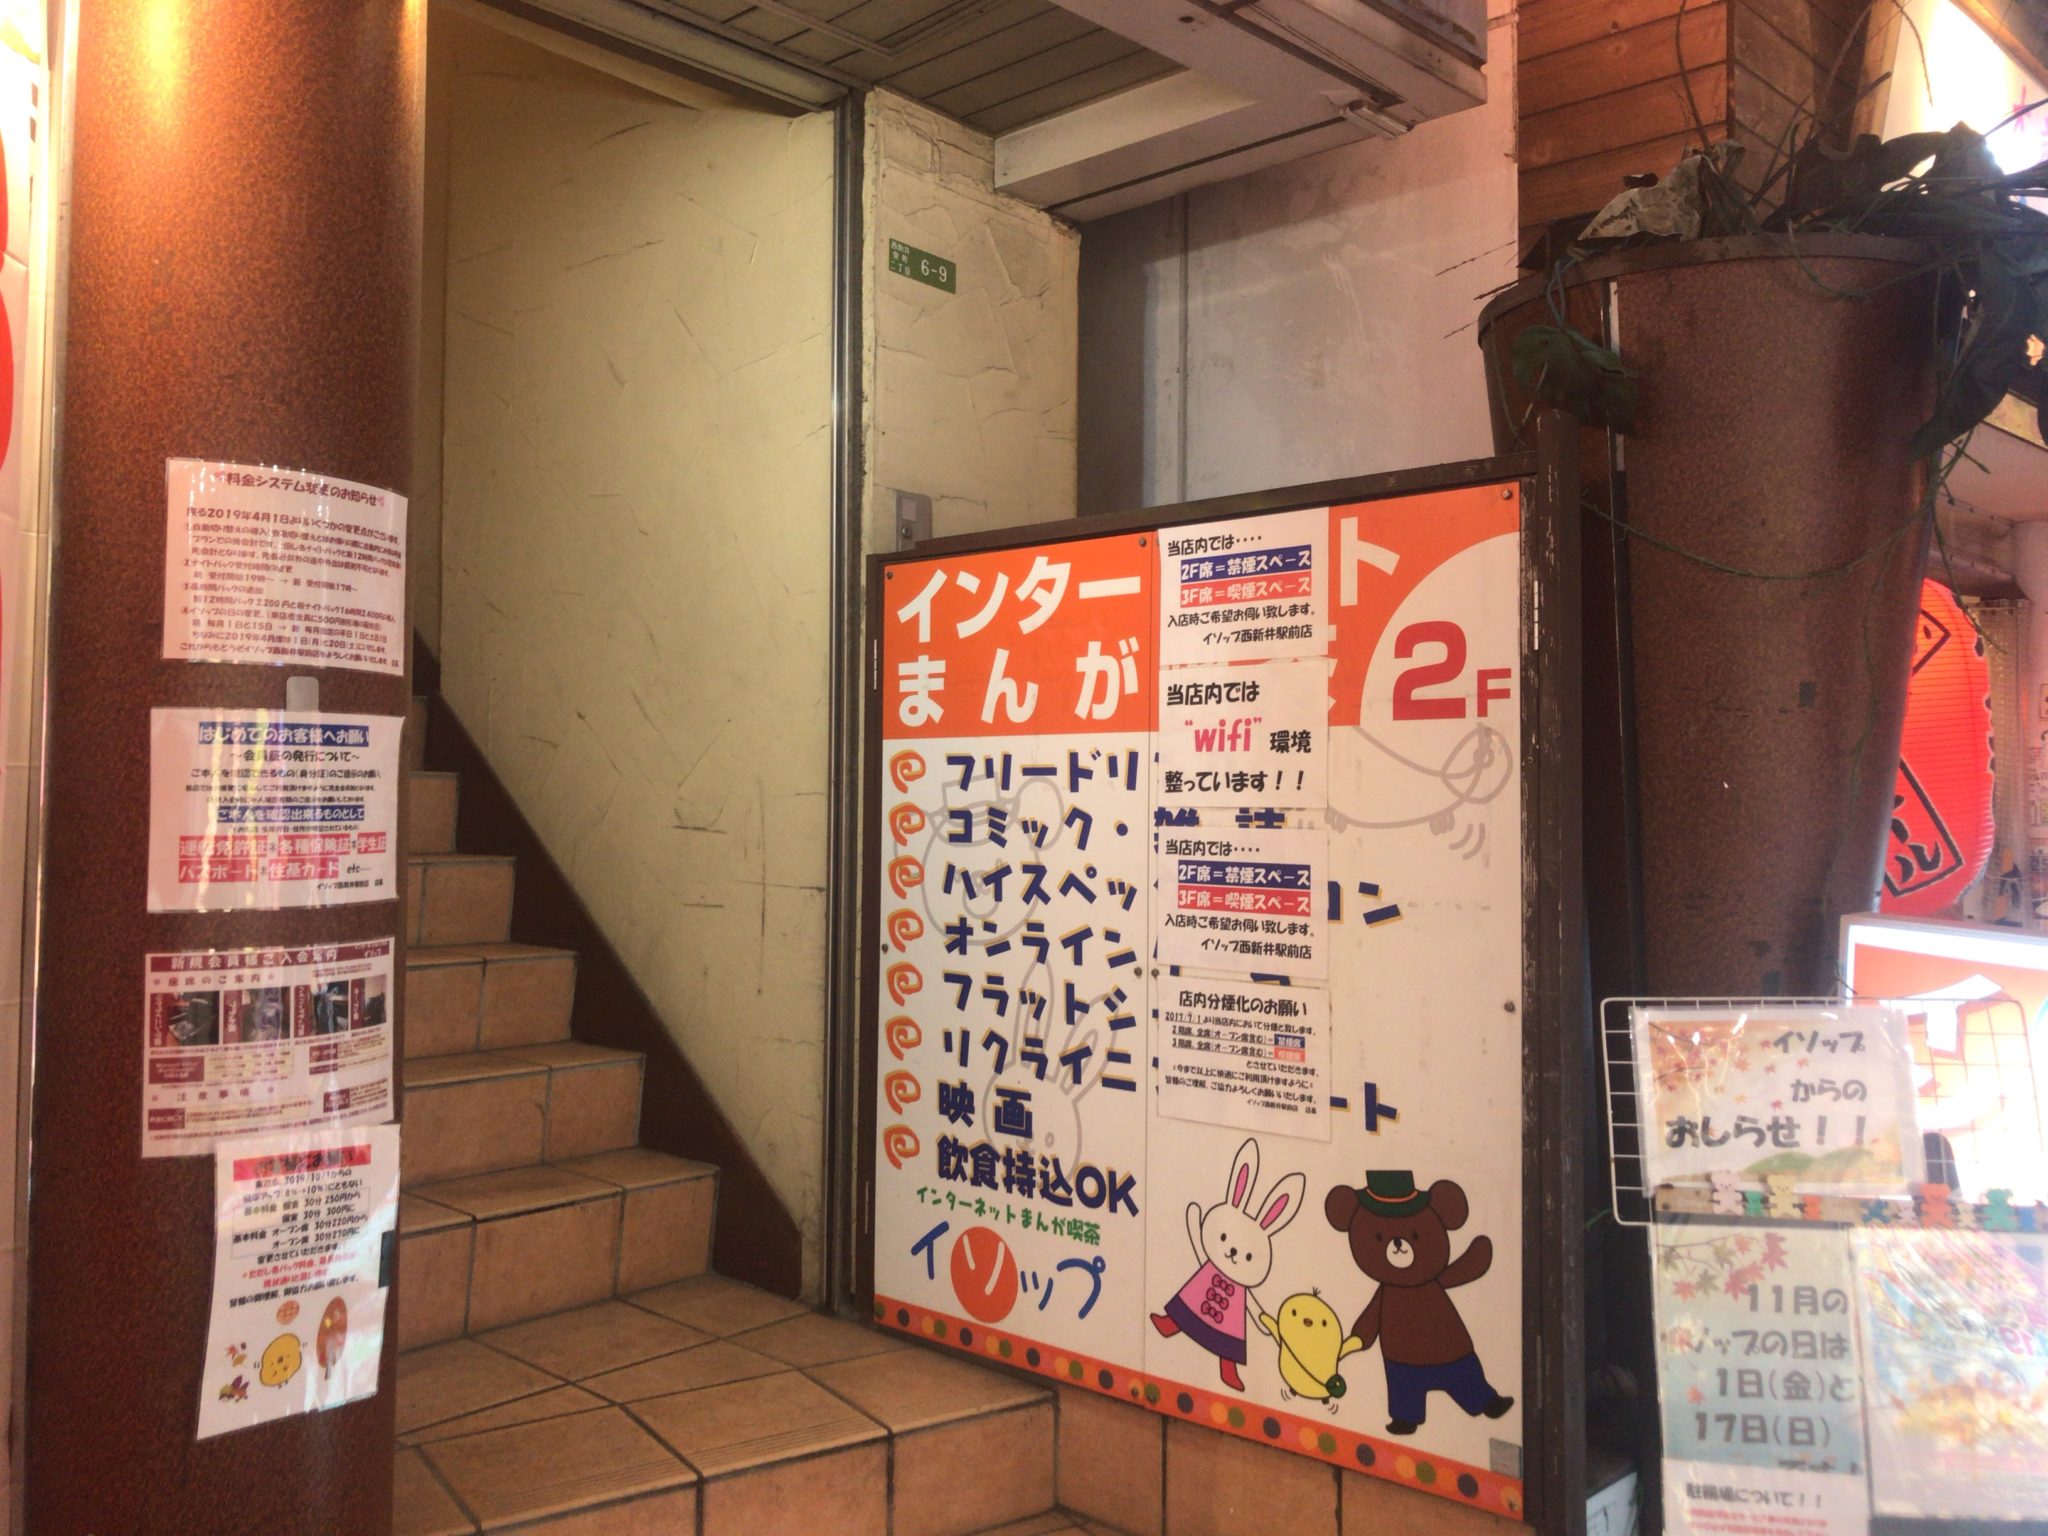 西新井駅から徒歩1分 まんが喫茶イソップをレポート 日本全国のネカフェ 漫画喫茶マップのヒマップ